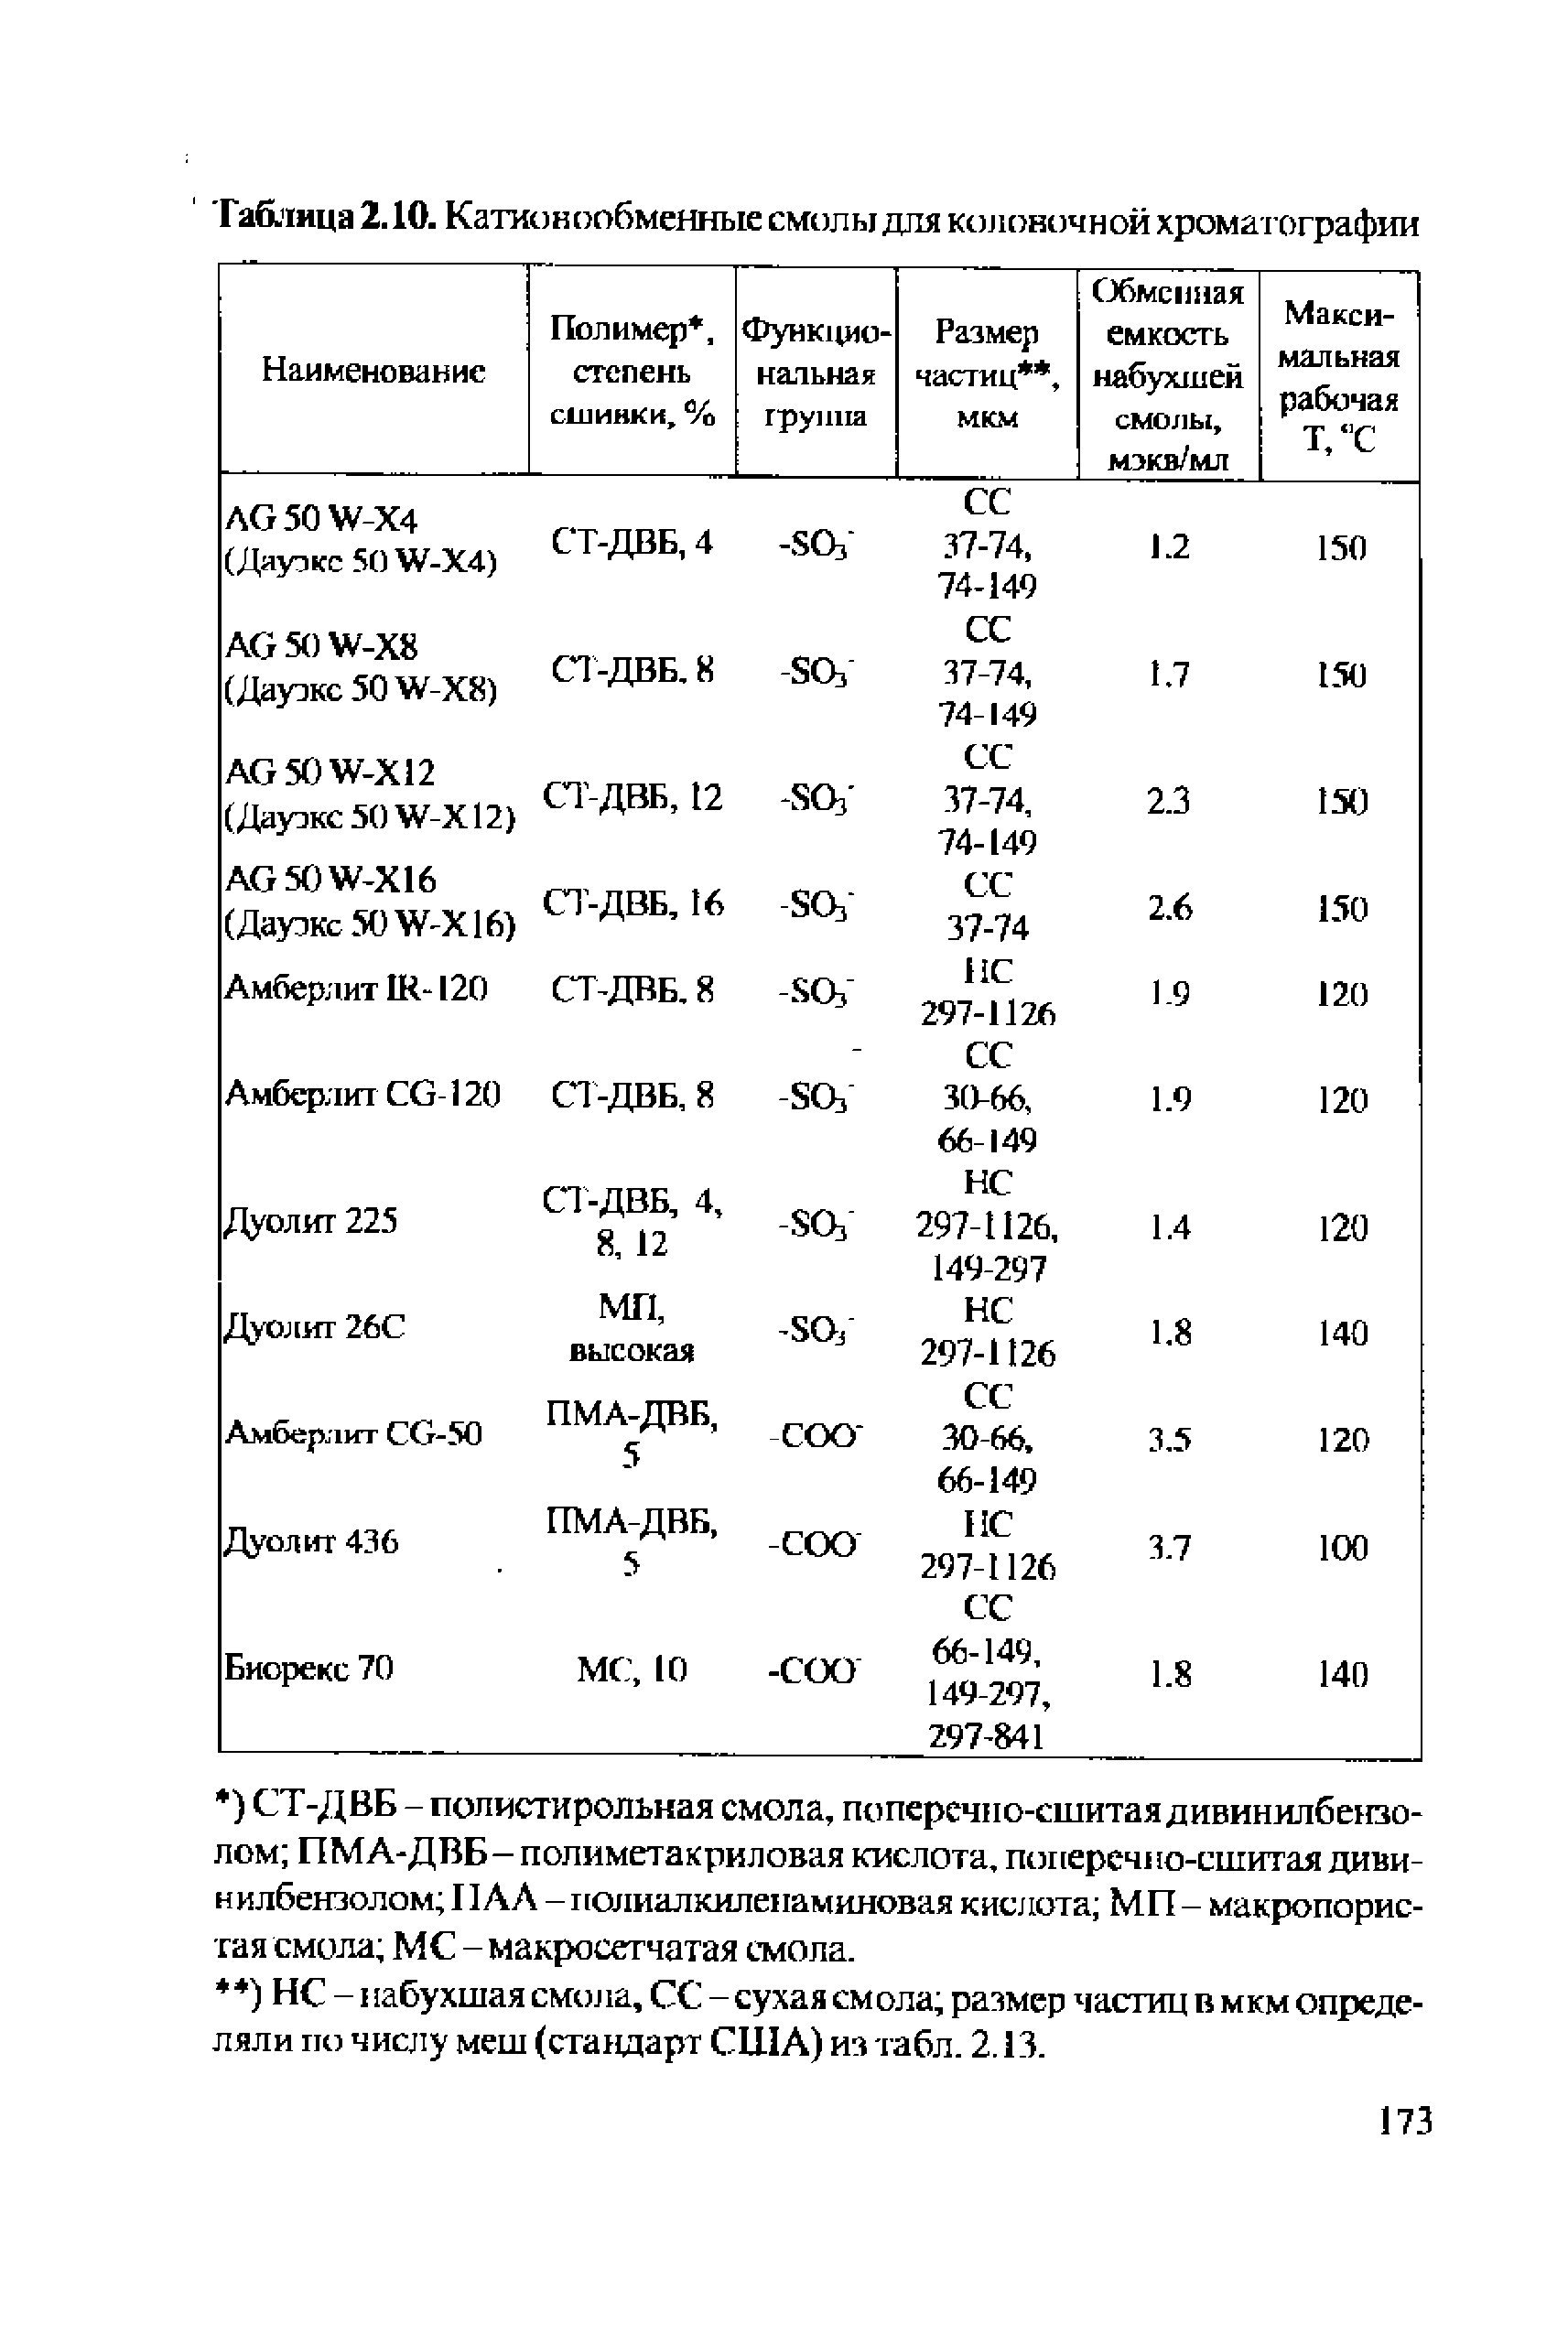 НС -1 [абухшая смола, СС - сухая смола размер частиц в мкм определяли по числу меш (стандарт США) из табл. 2.13.